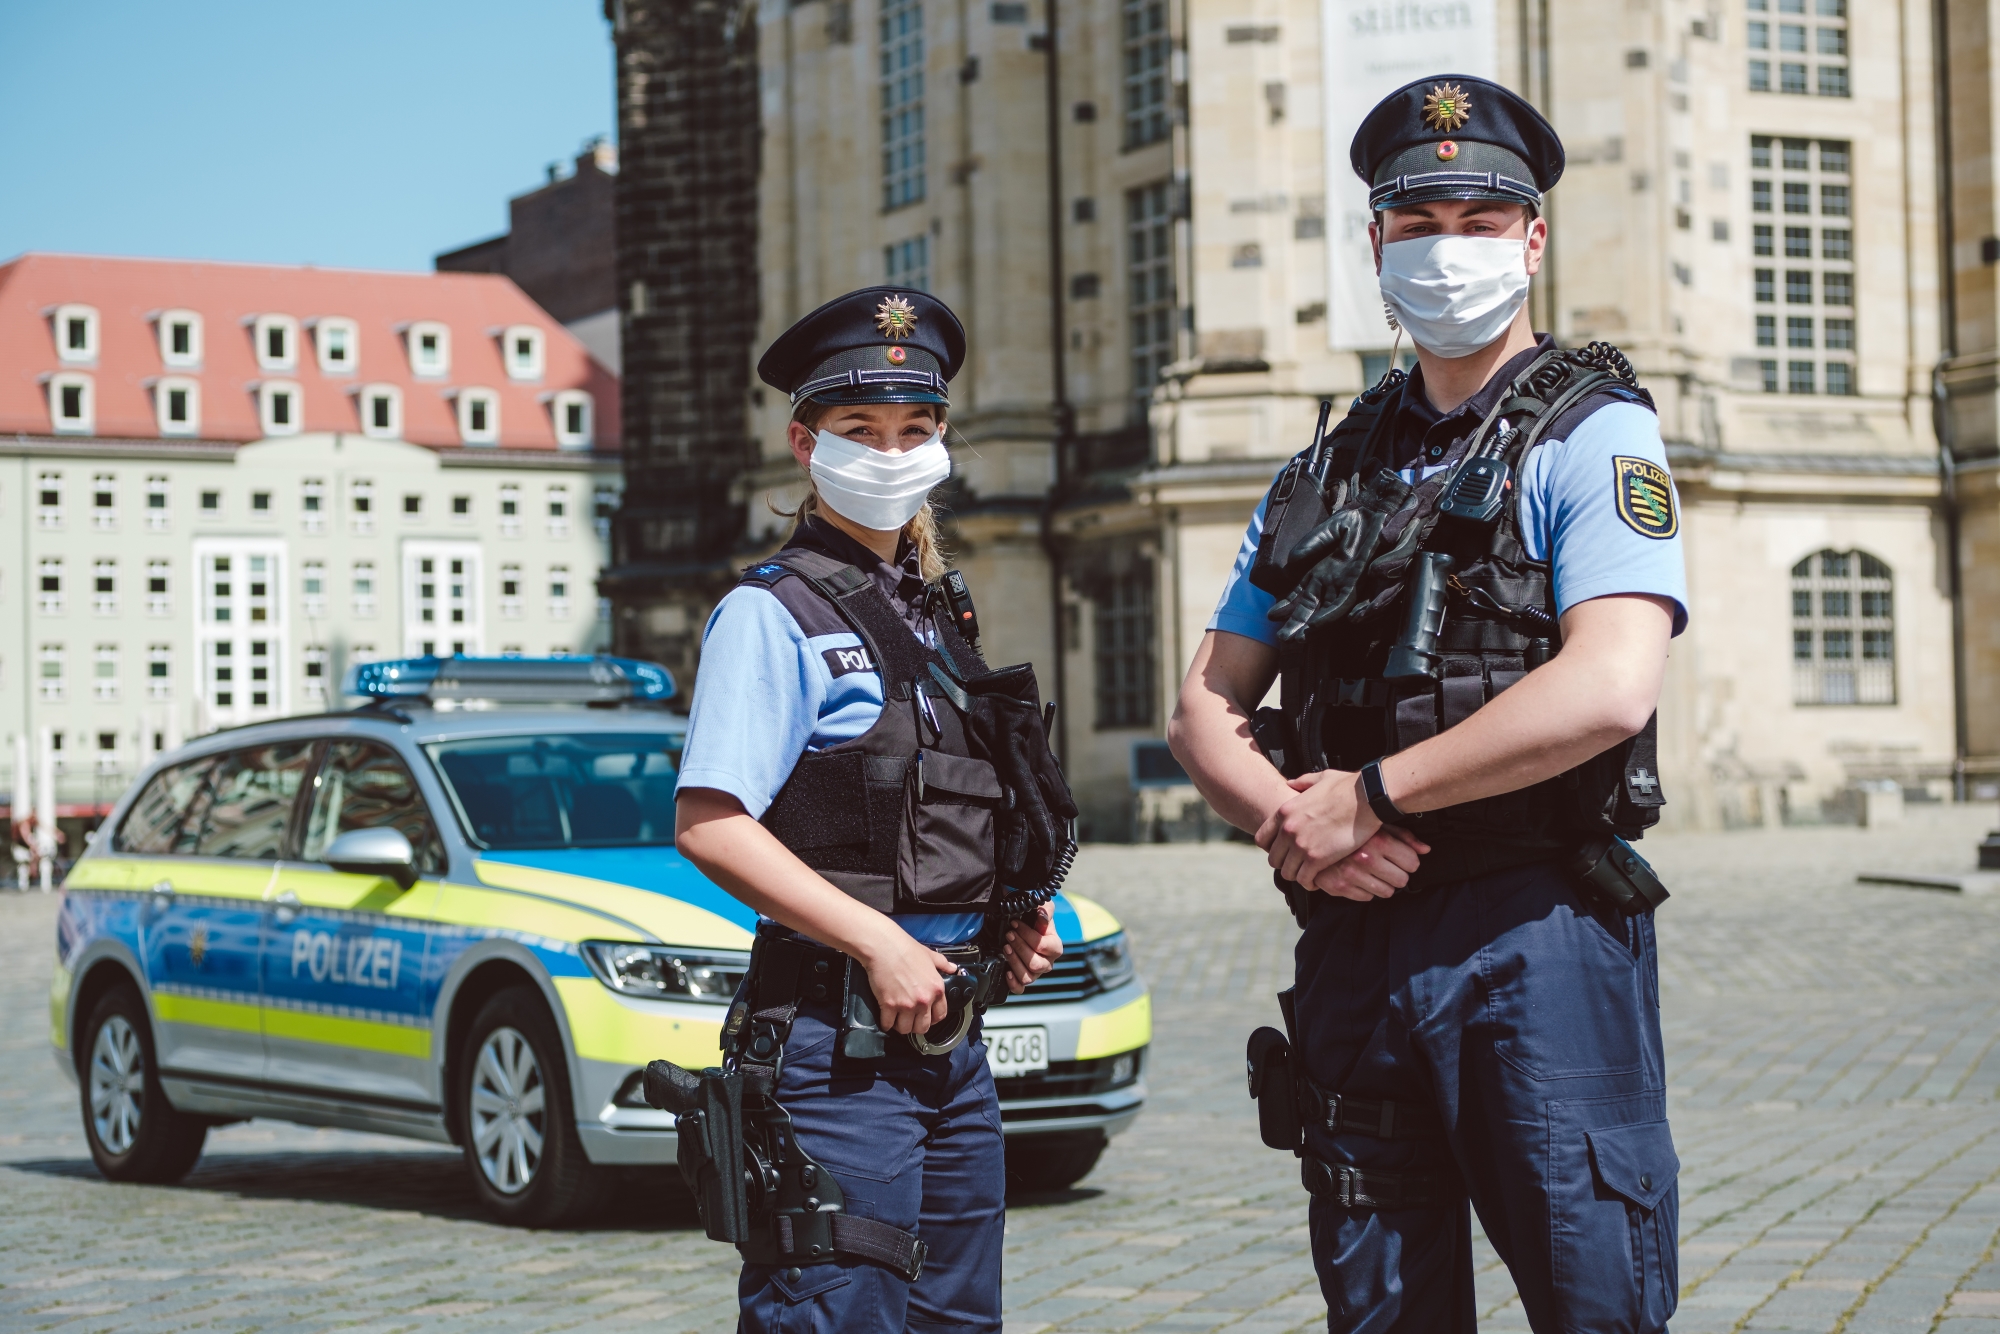 Polizeibeamte mit Community-Maske